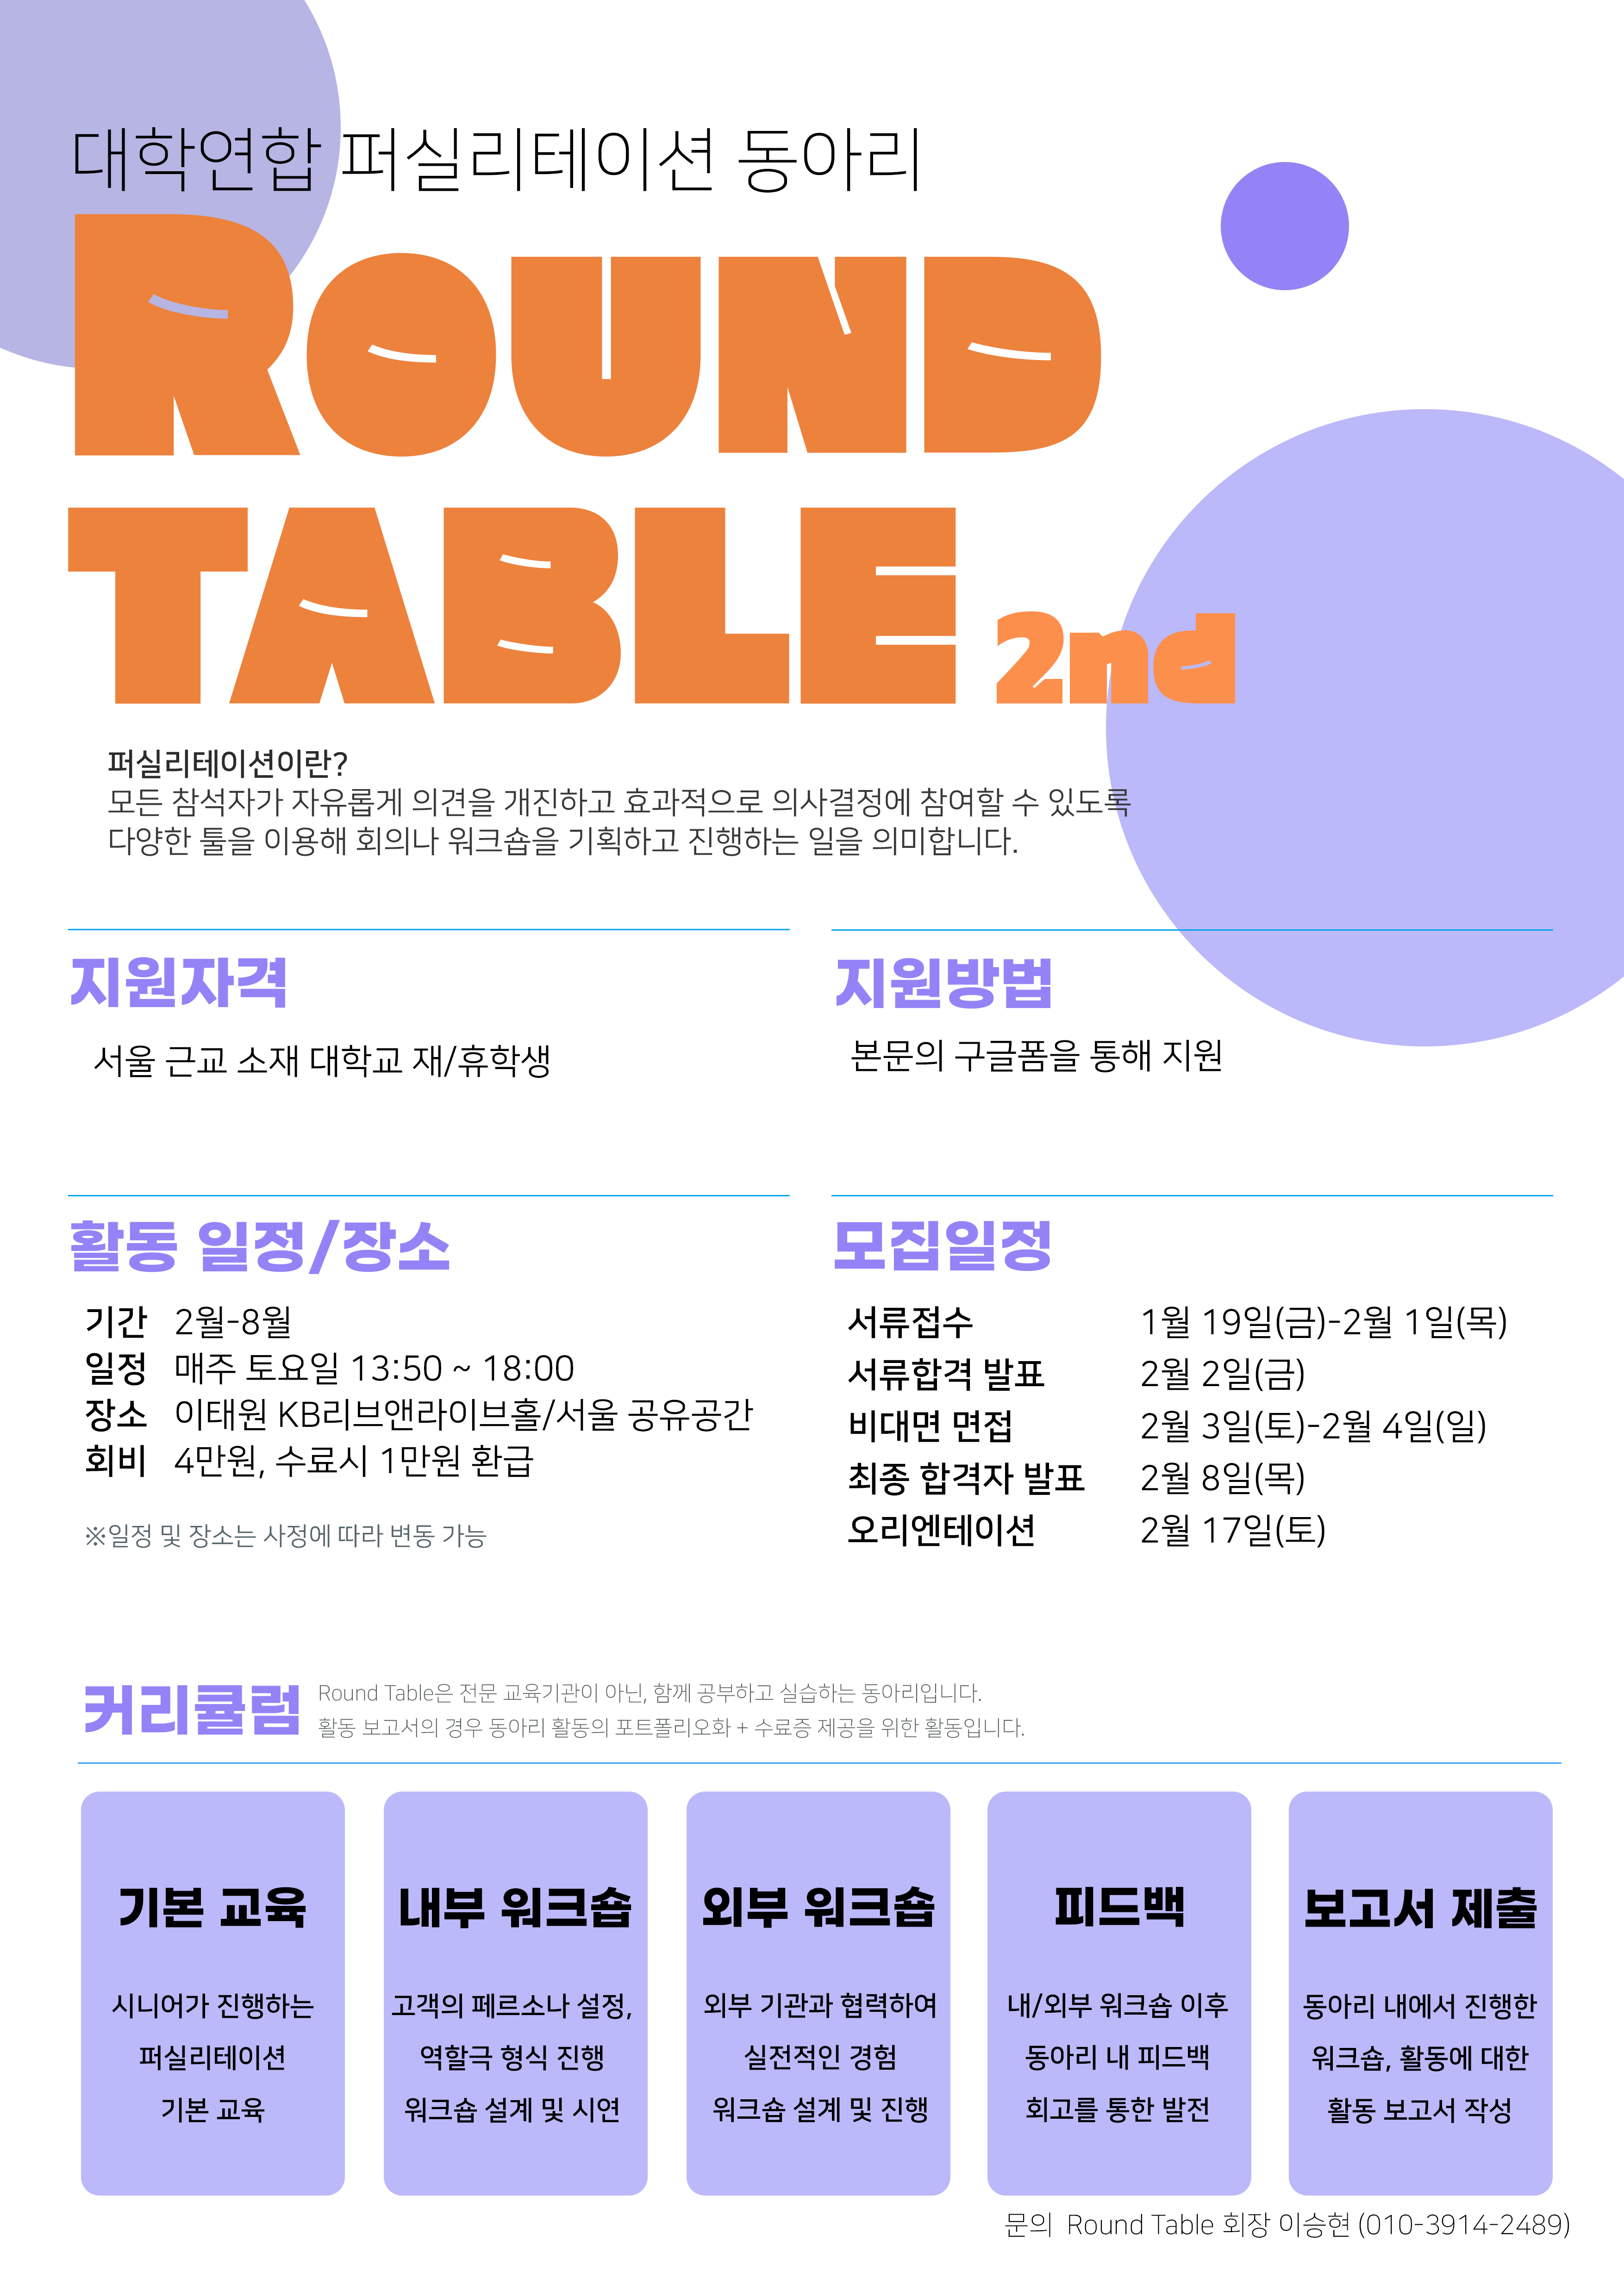 [대학연합 HR | 퍼실리테이션 동아리] Round Table 2기 모집